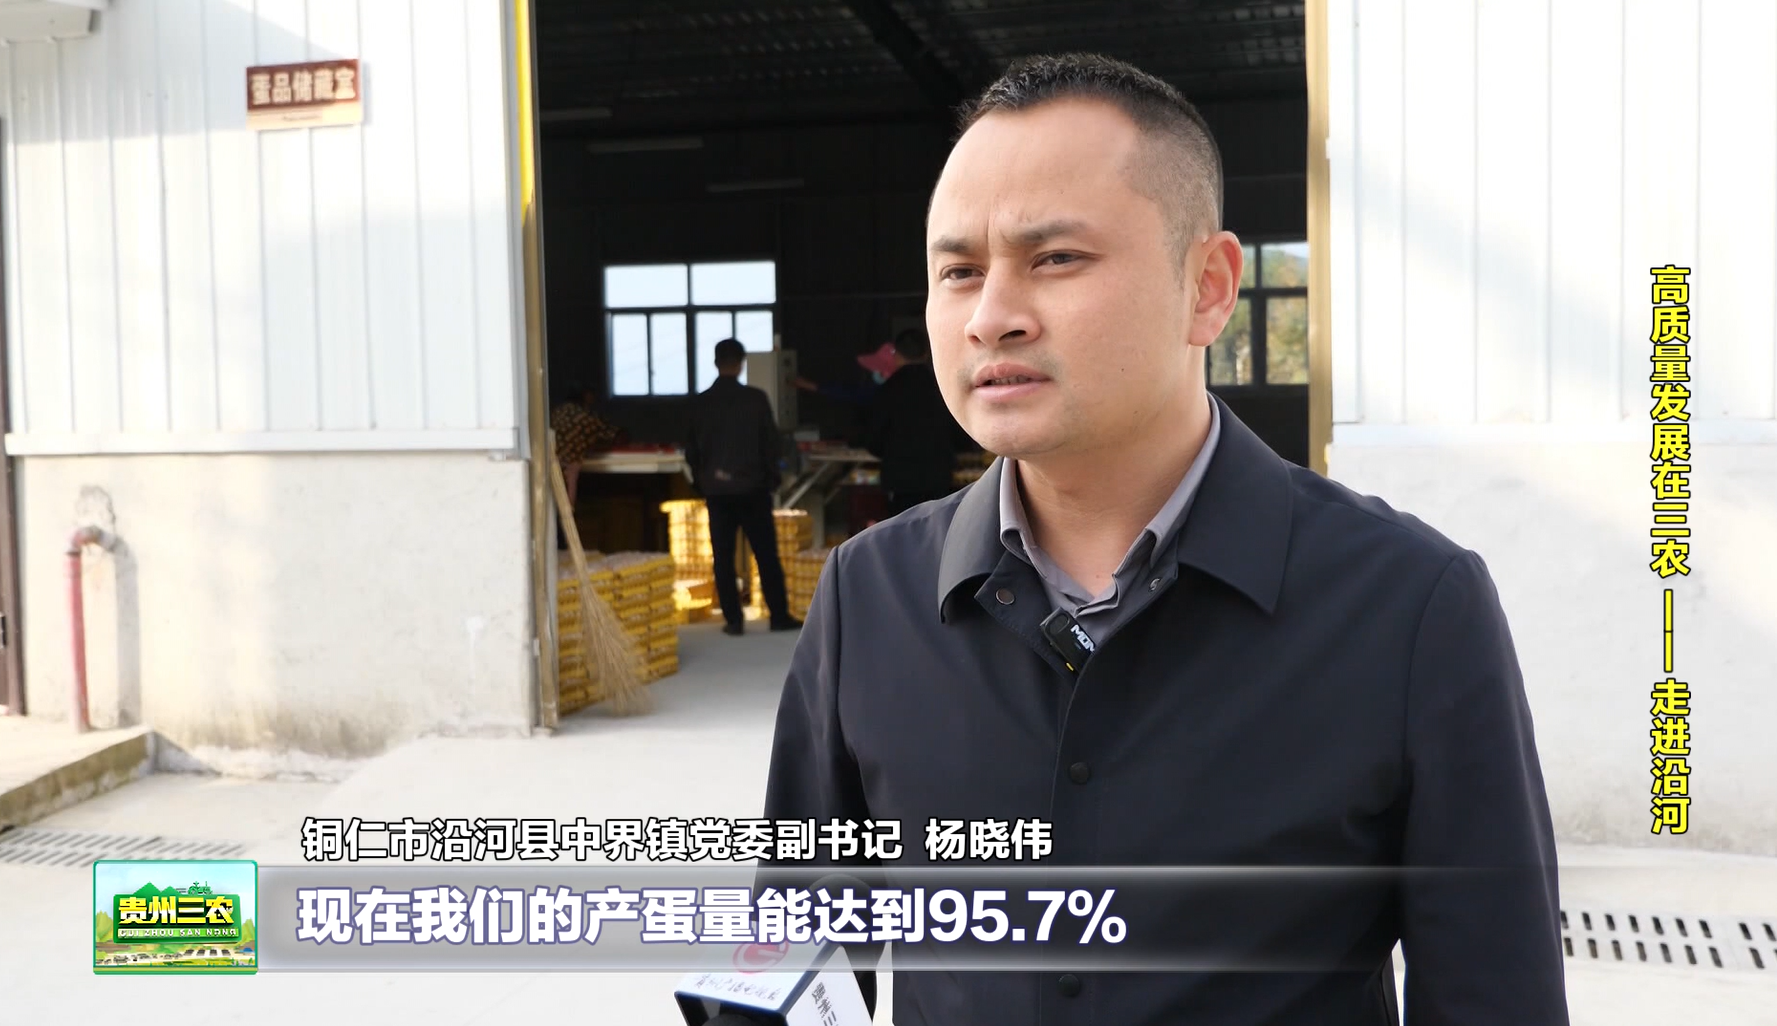 铜仁市沿河县中界镇党委副书记杨晓伟介绍:现在我们的产蛋量能达到